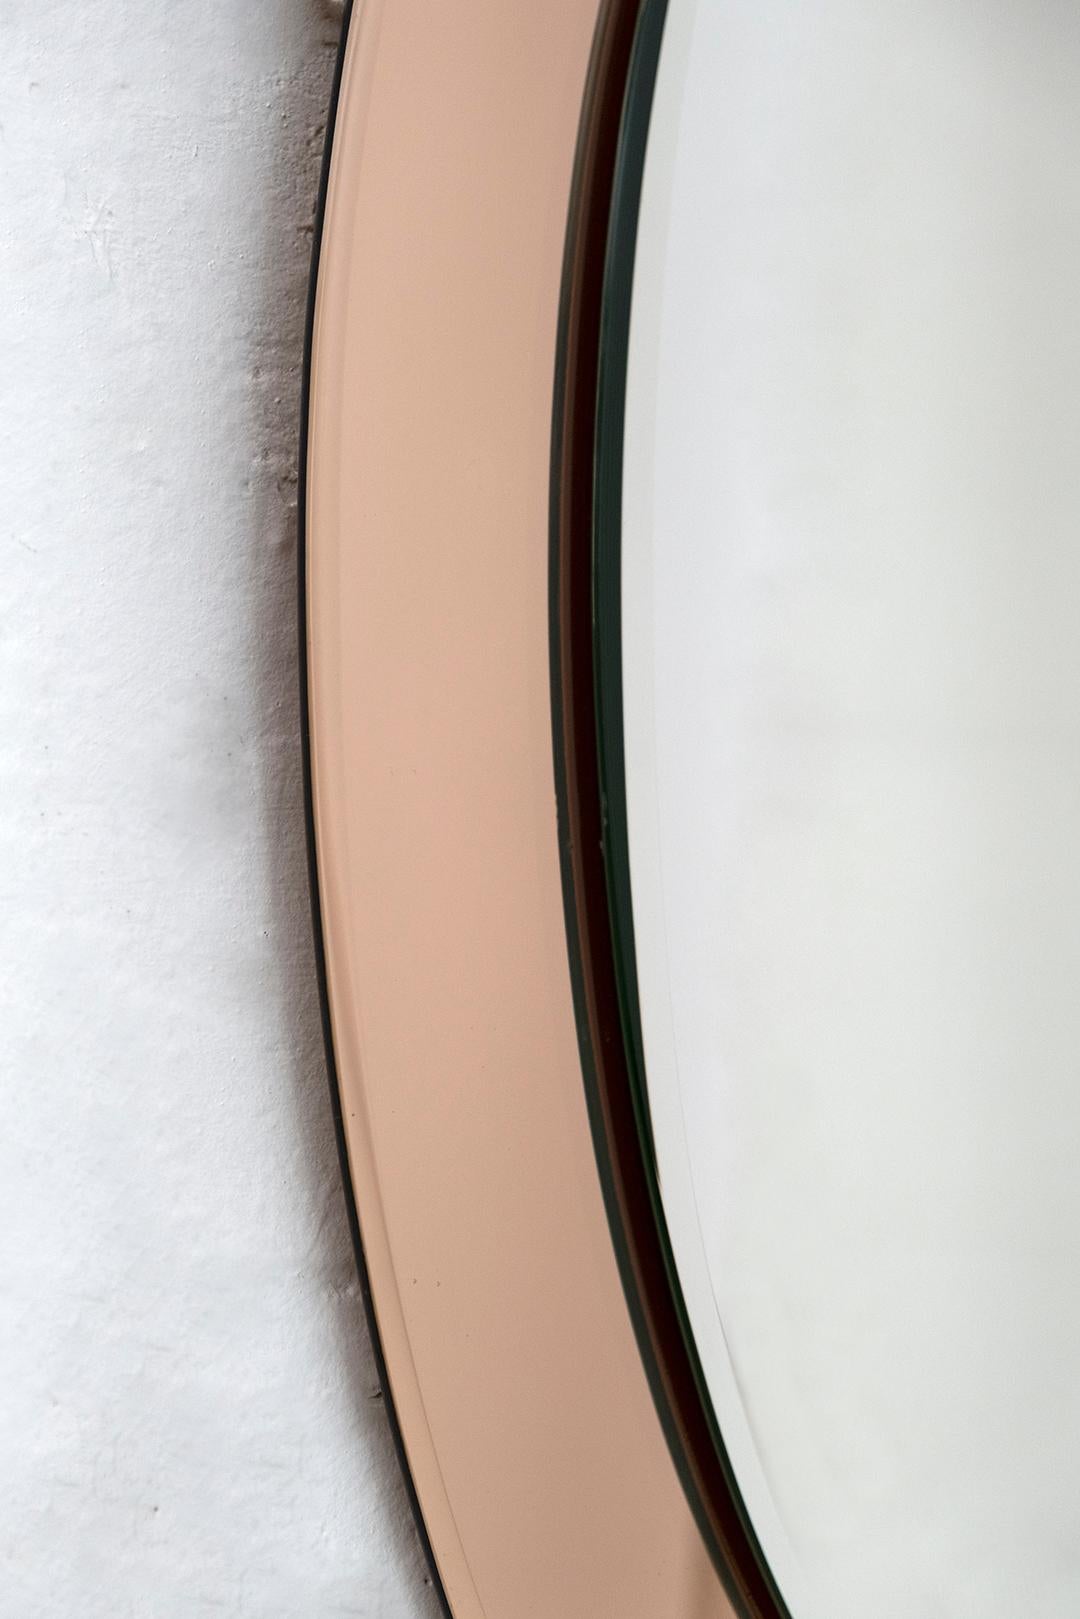 Dieser Spiegel wurde von Antonio Lupi für Cristal Luxor entworfen und hergestellt.
Wie auf dem Foto zu sehen, hat es zwei Kratzer auf dem umgebenden Rahmen, im oberen Teil.

Antonio Lupi wurde 1932 in Vinci in Italien geboren und begann im Alter